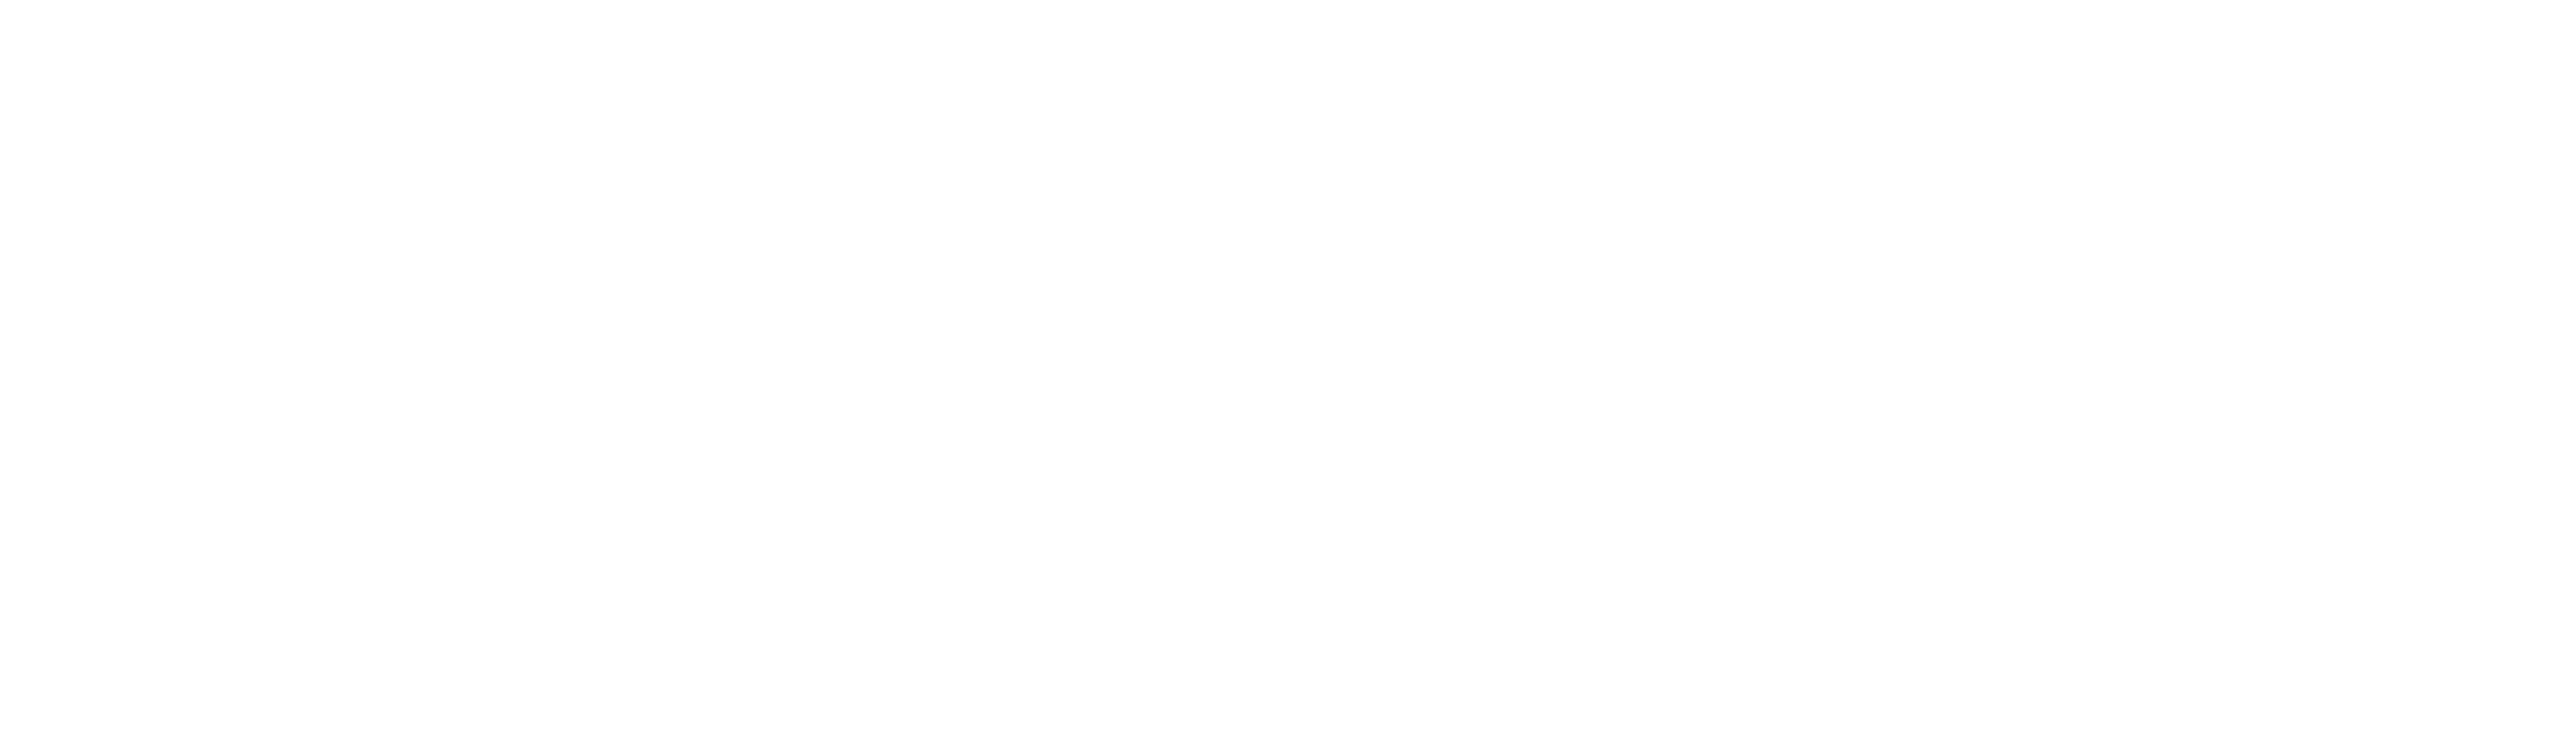 Apple Music Logo - White